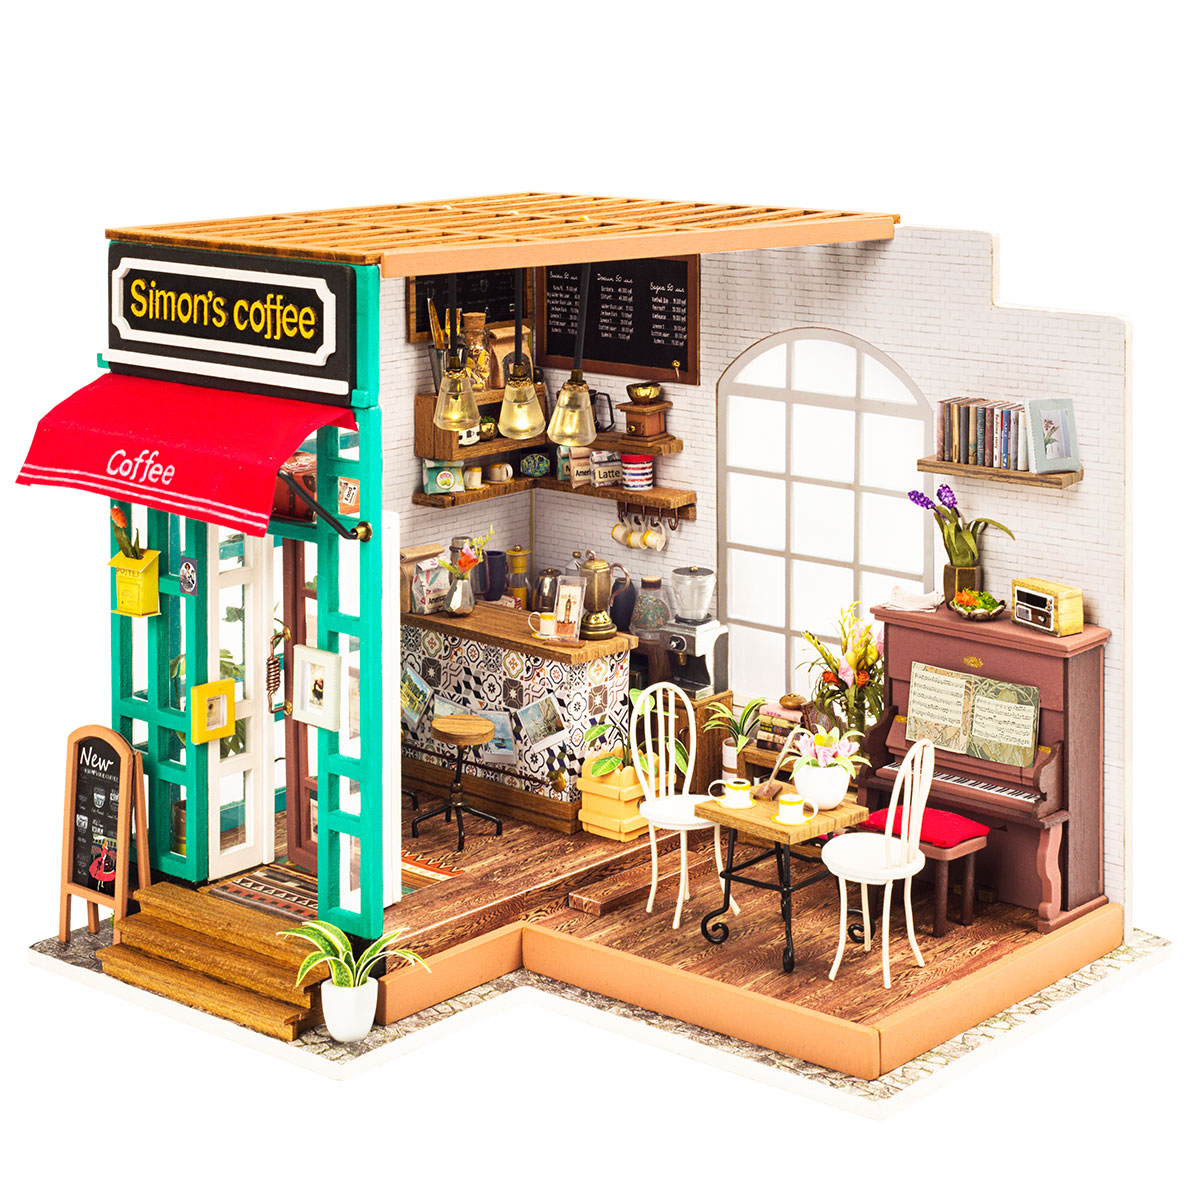 Maquette miniature Bookstand Time travel par Rolife Robotime